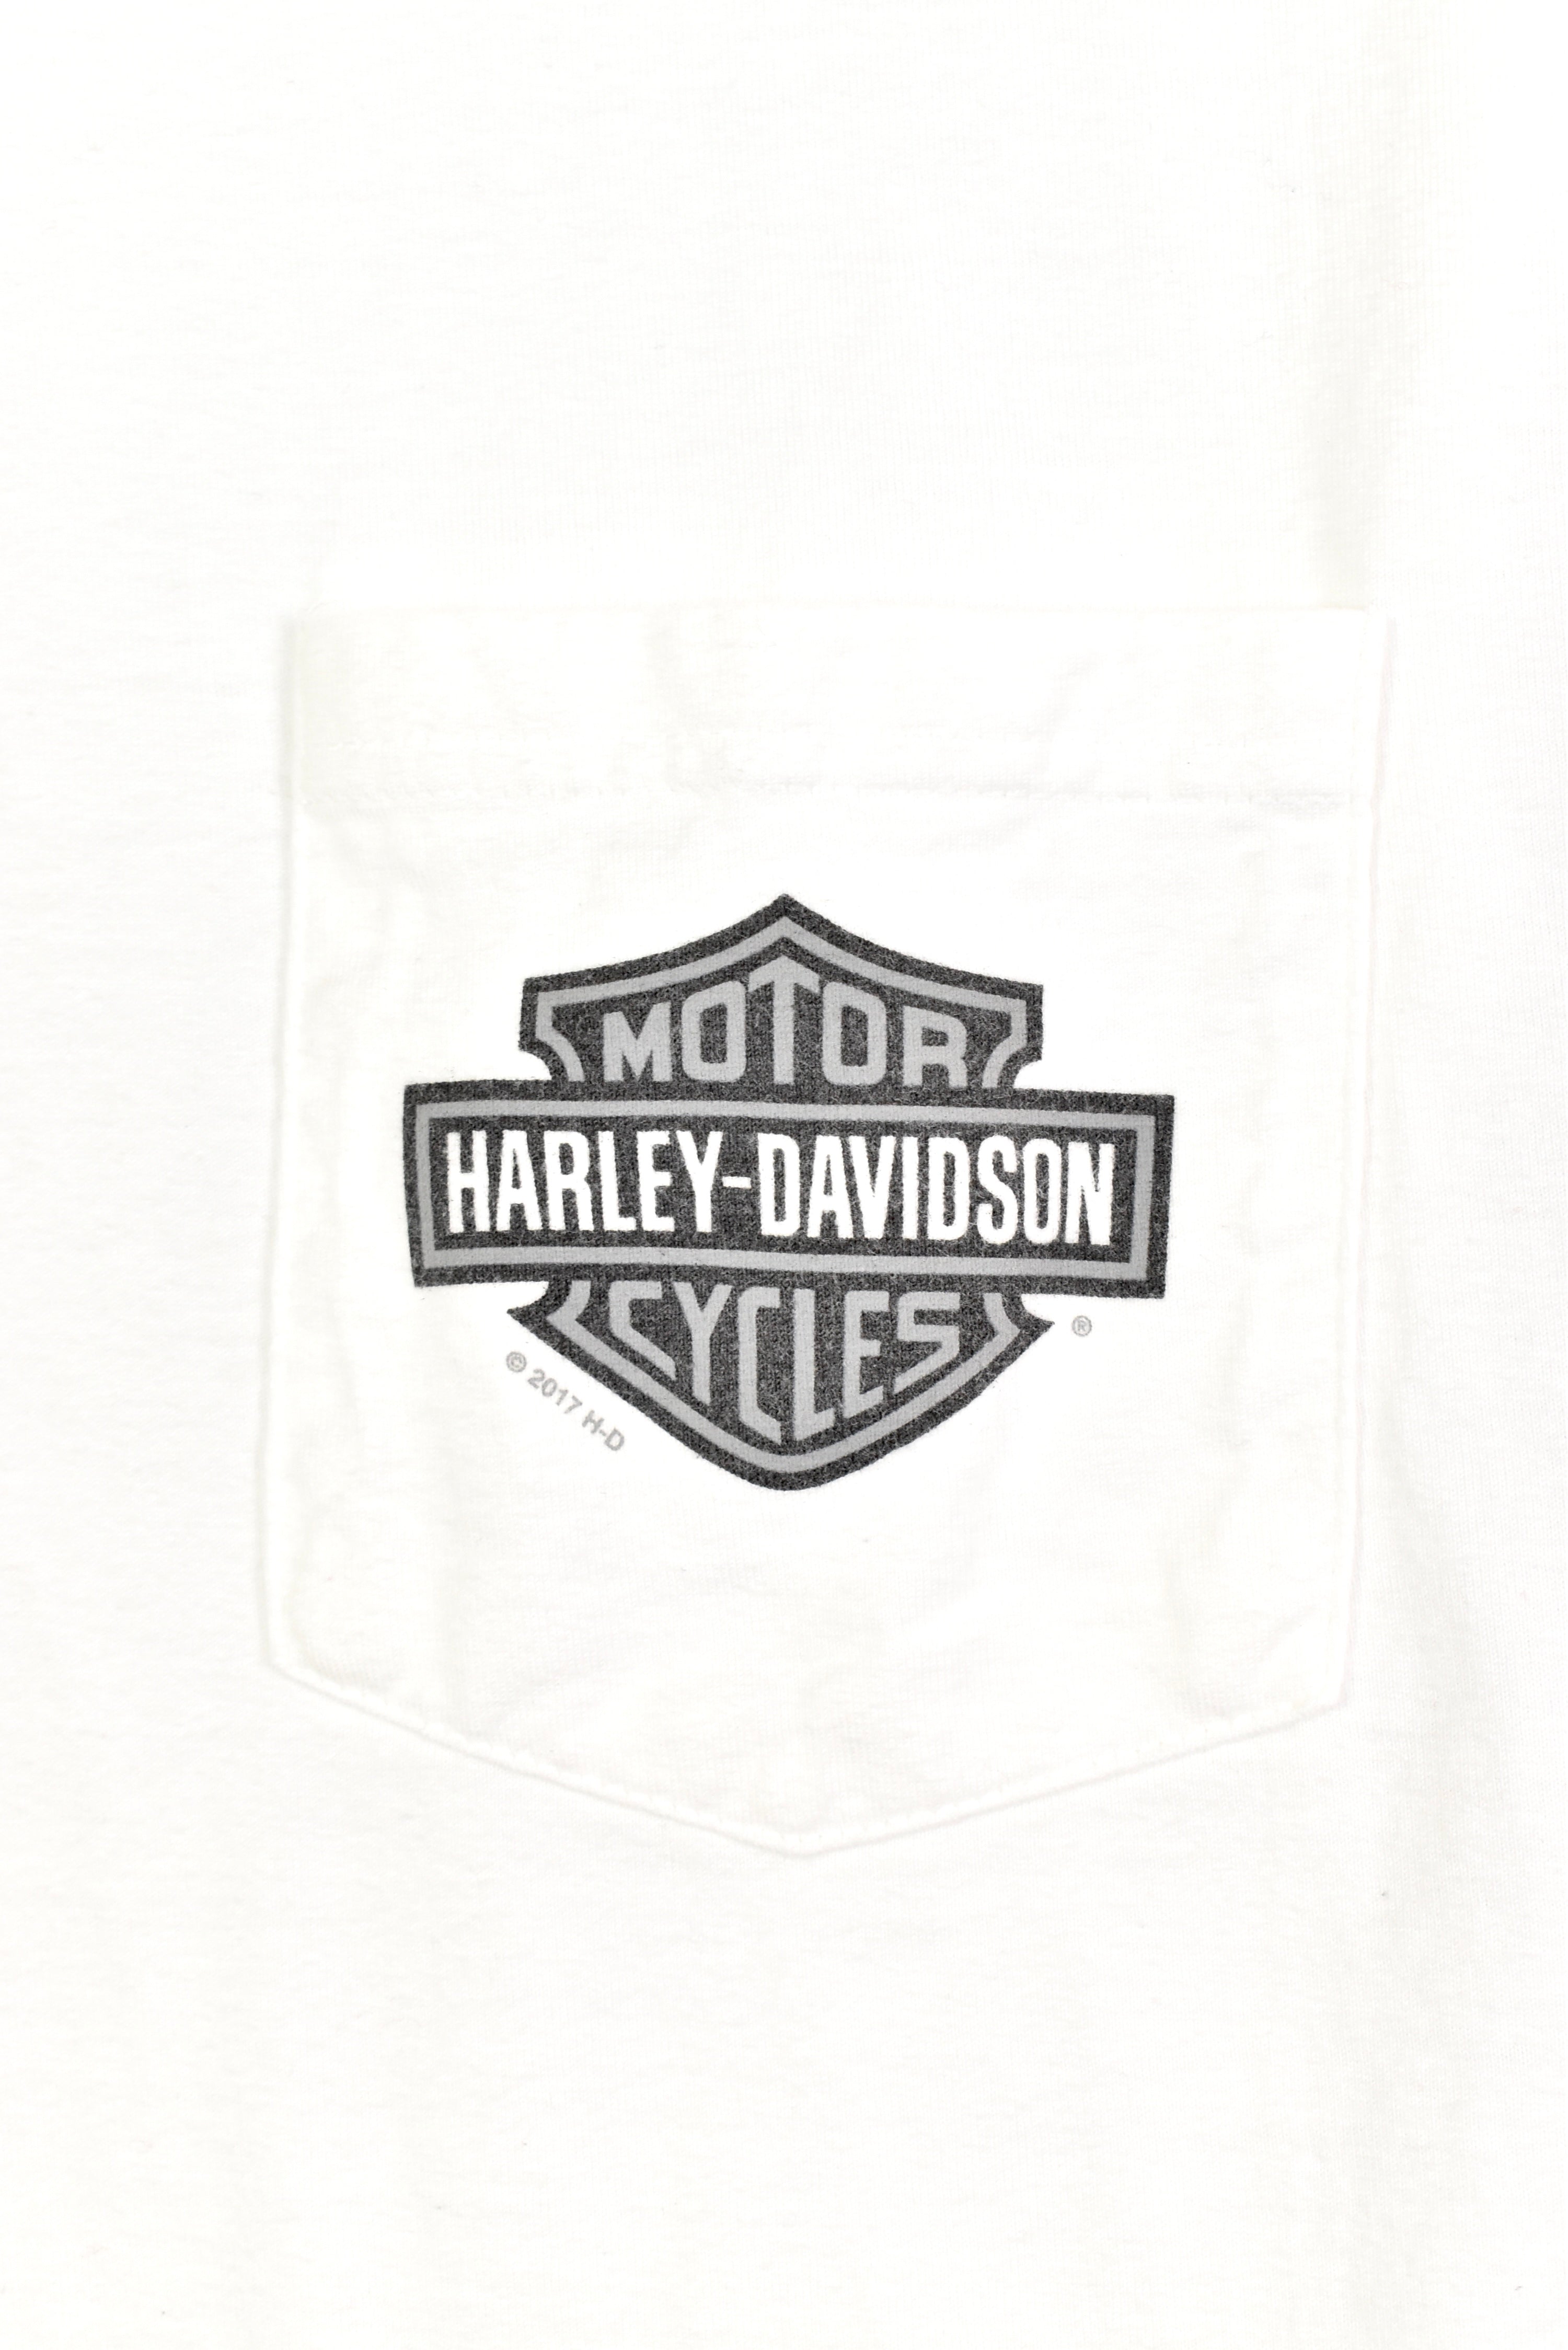 Modern Harley Davidson shirt, 2017 white graphic tee - AU L HARLEY DAVIDSON